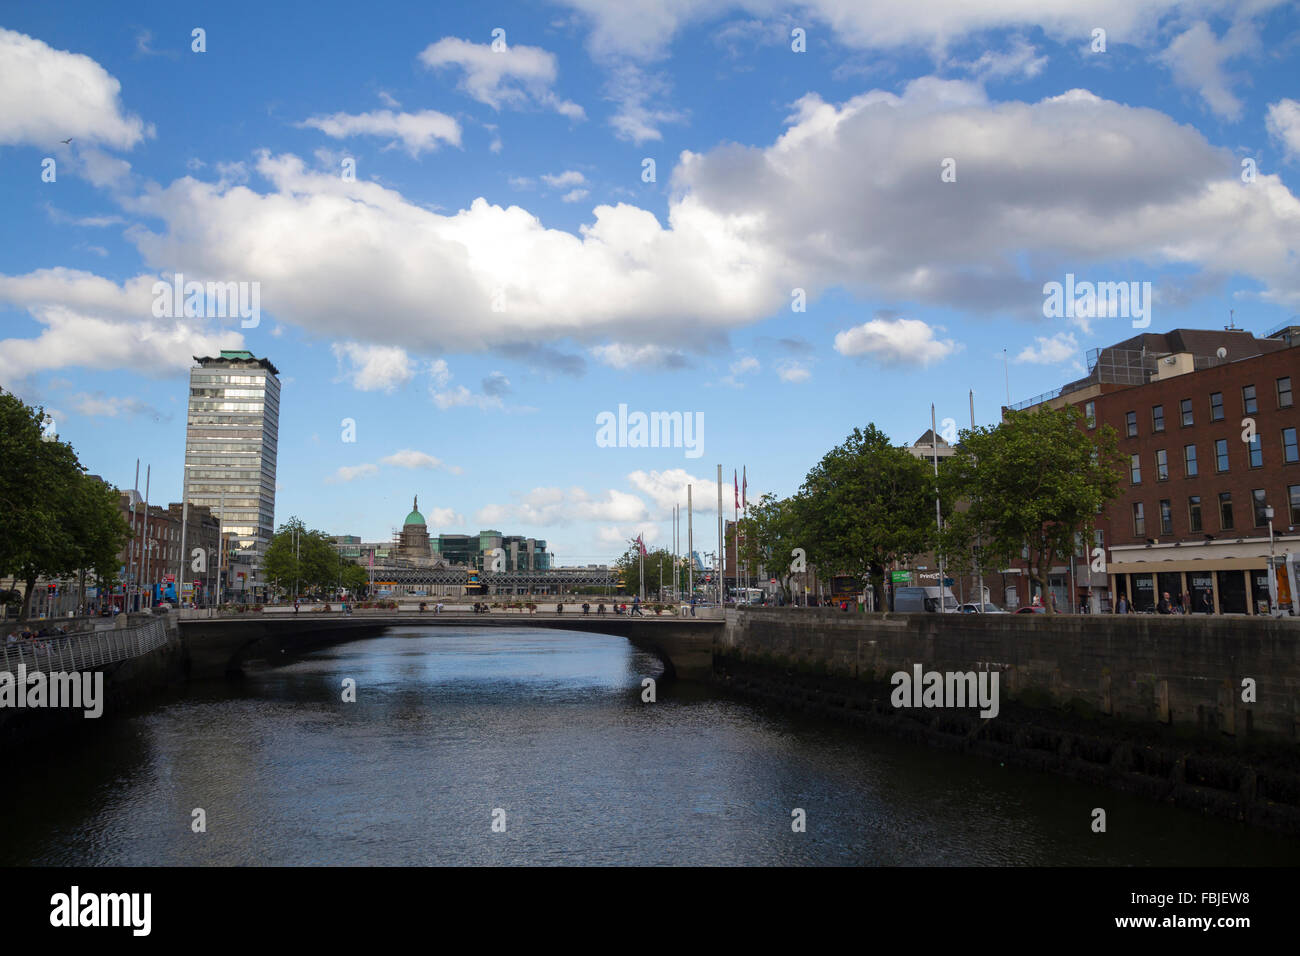 Vue sur la ville de Dublin, capitale de l'Irlande, avec le pont sur la rivière Liffey Banque D'Images